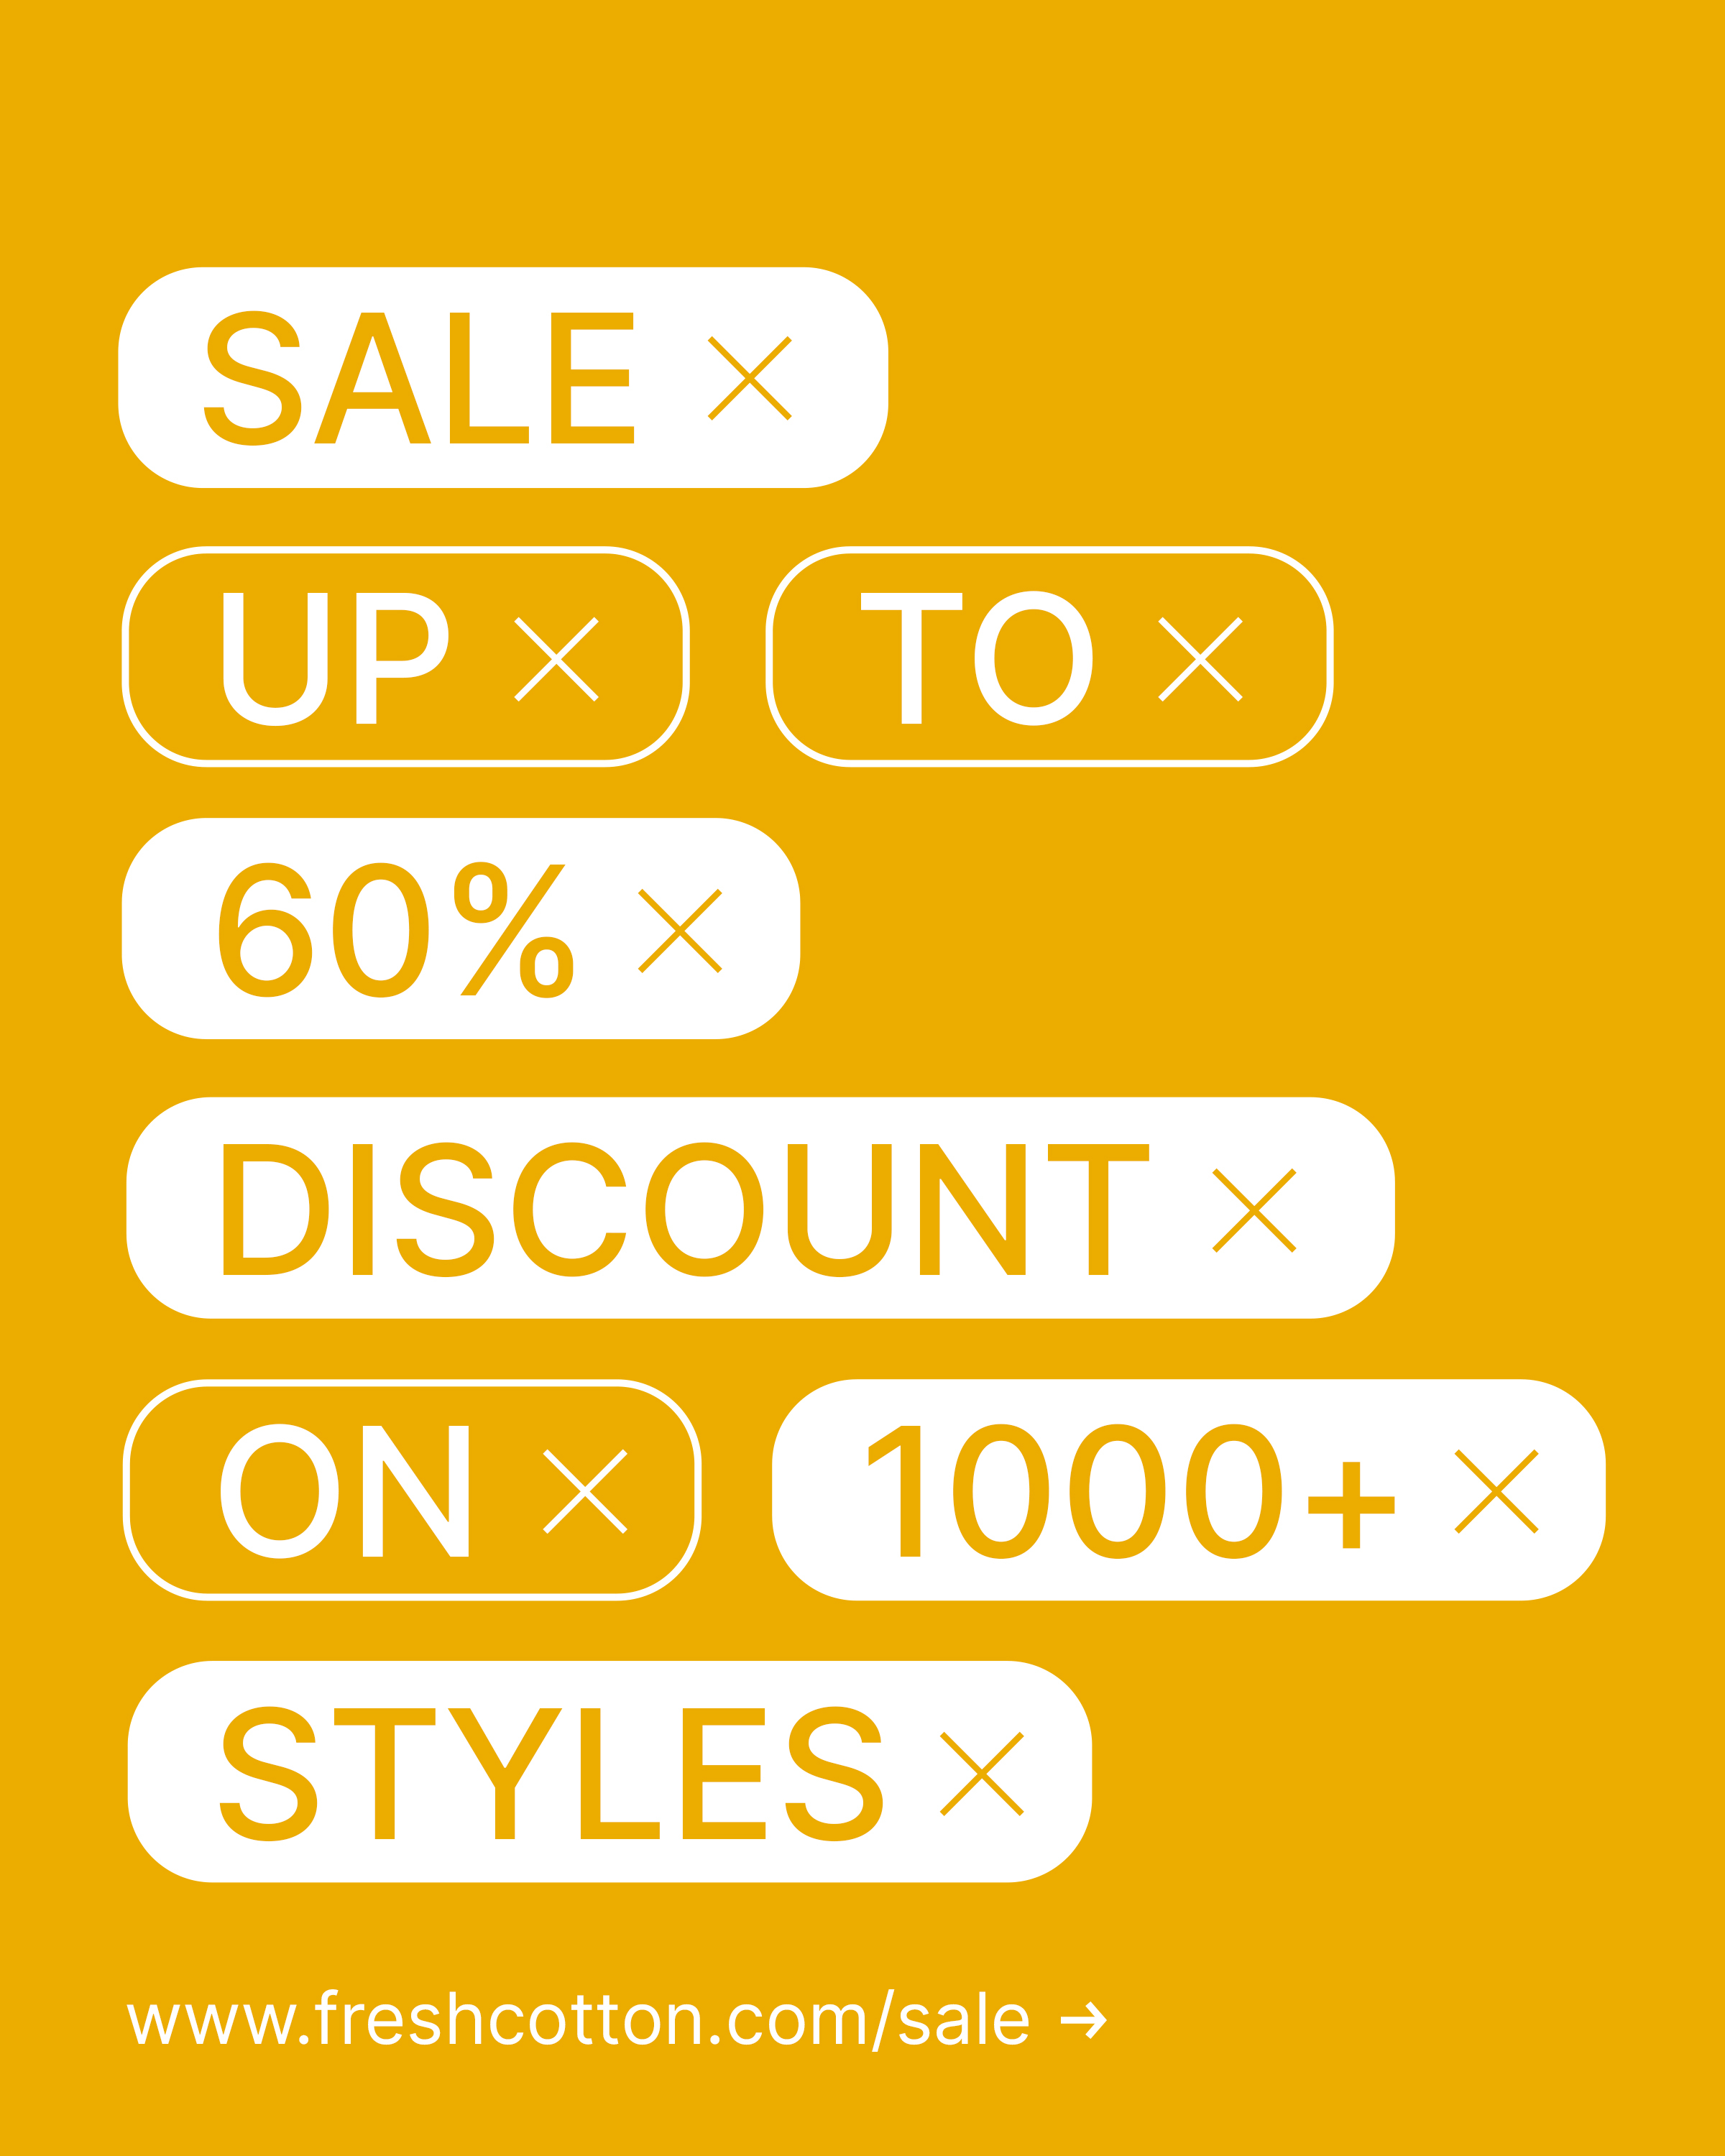 Sale: tot 60% korting op 1000+ items